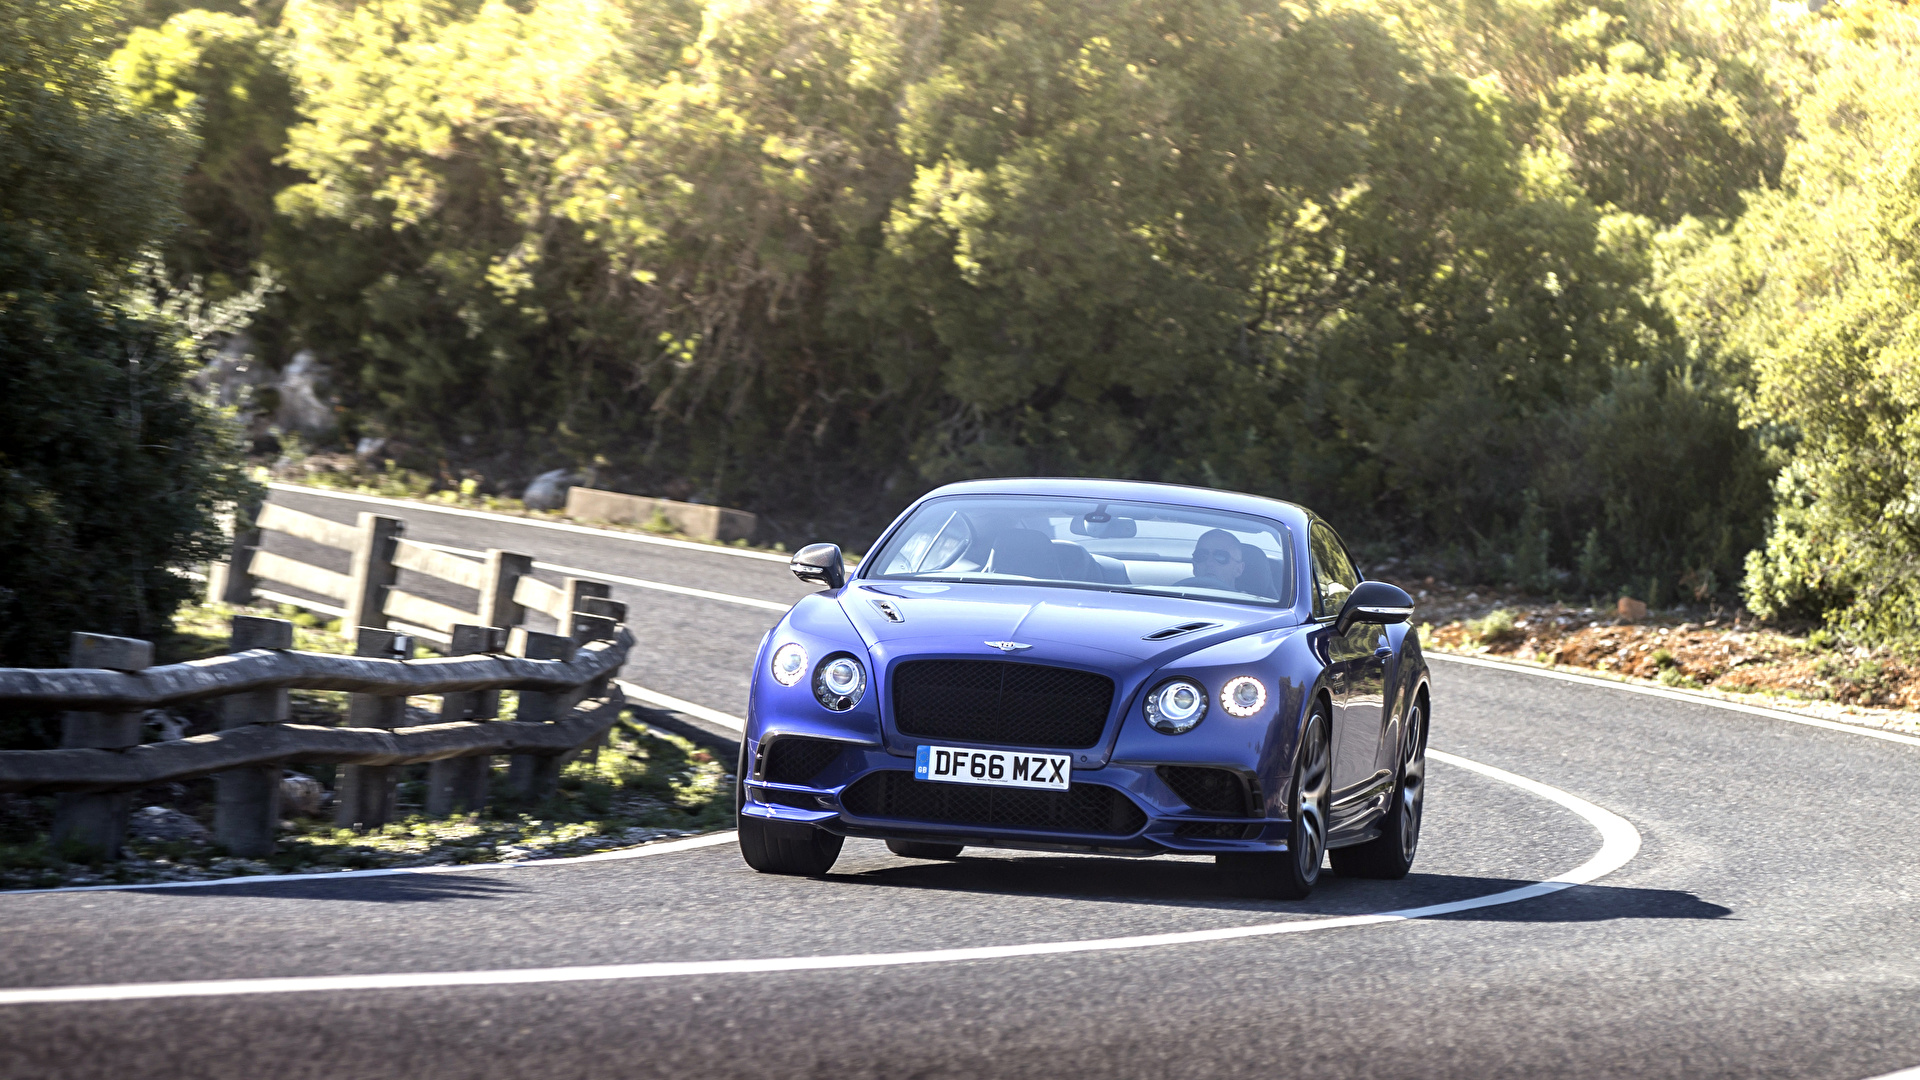 Фотографии Bentley continental gt supersport 2018 Синий Дороги едущий Спереди Автомобили 1920x1080 Бентли синяя синие синих едет едущая Движение скорость авто машины машина автомобиль